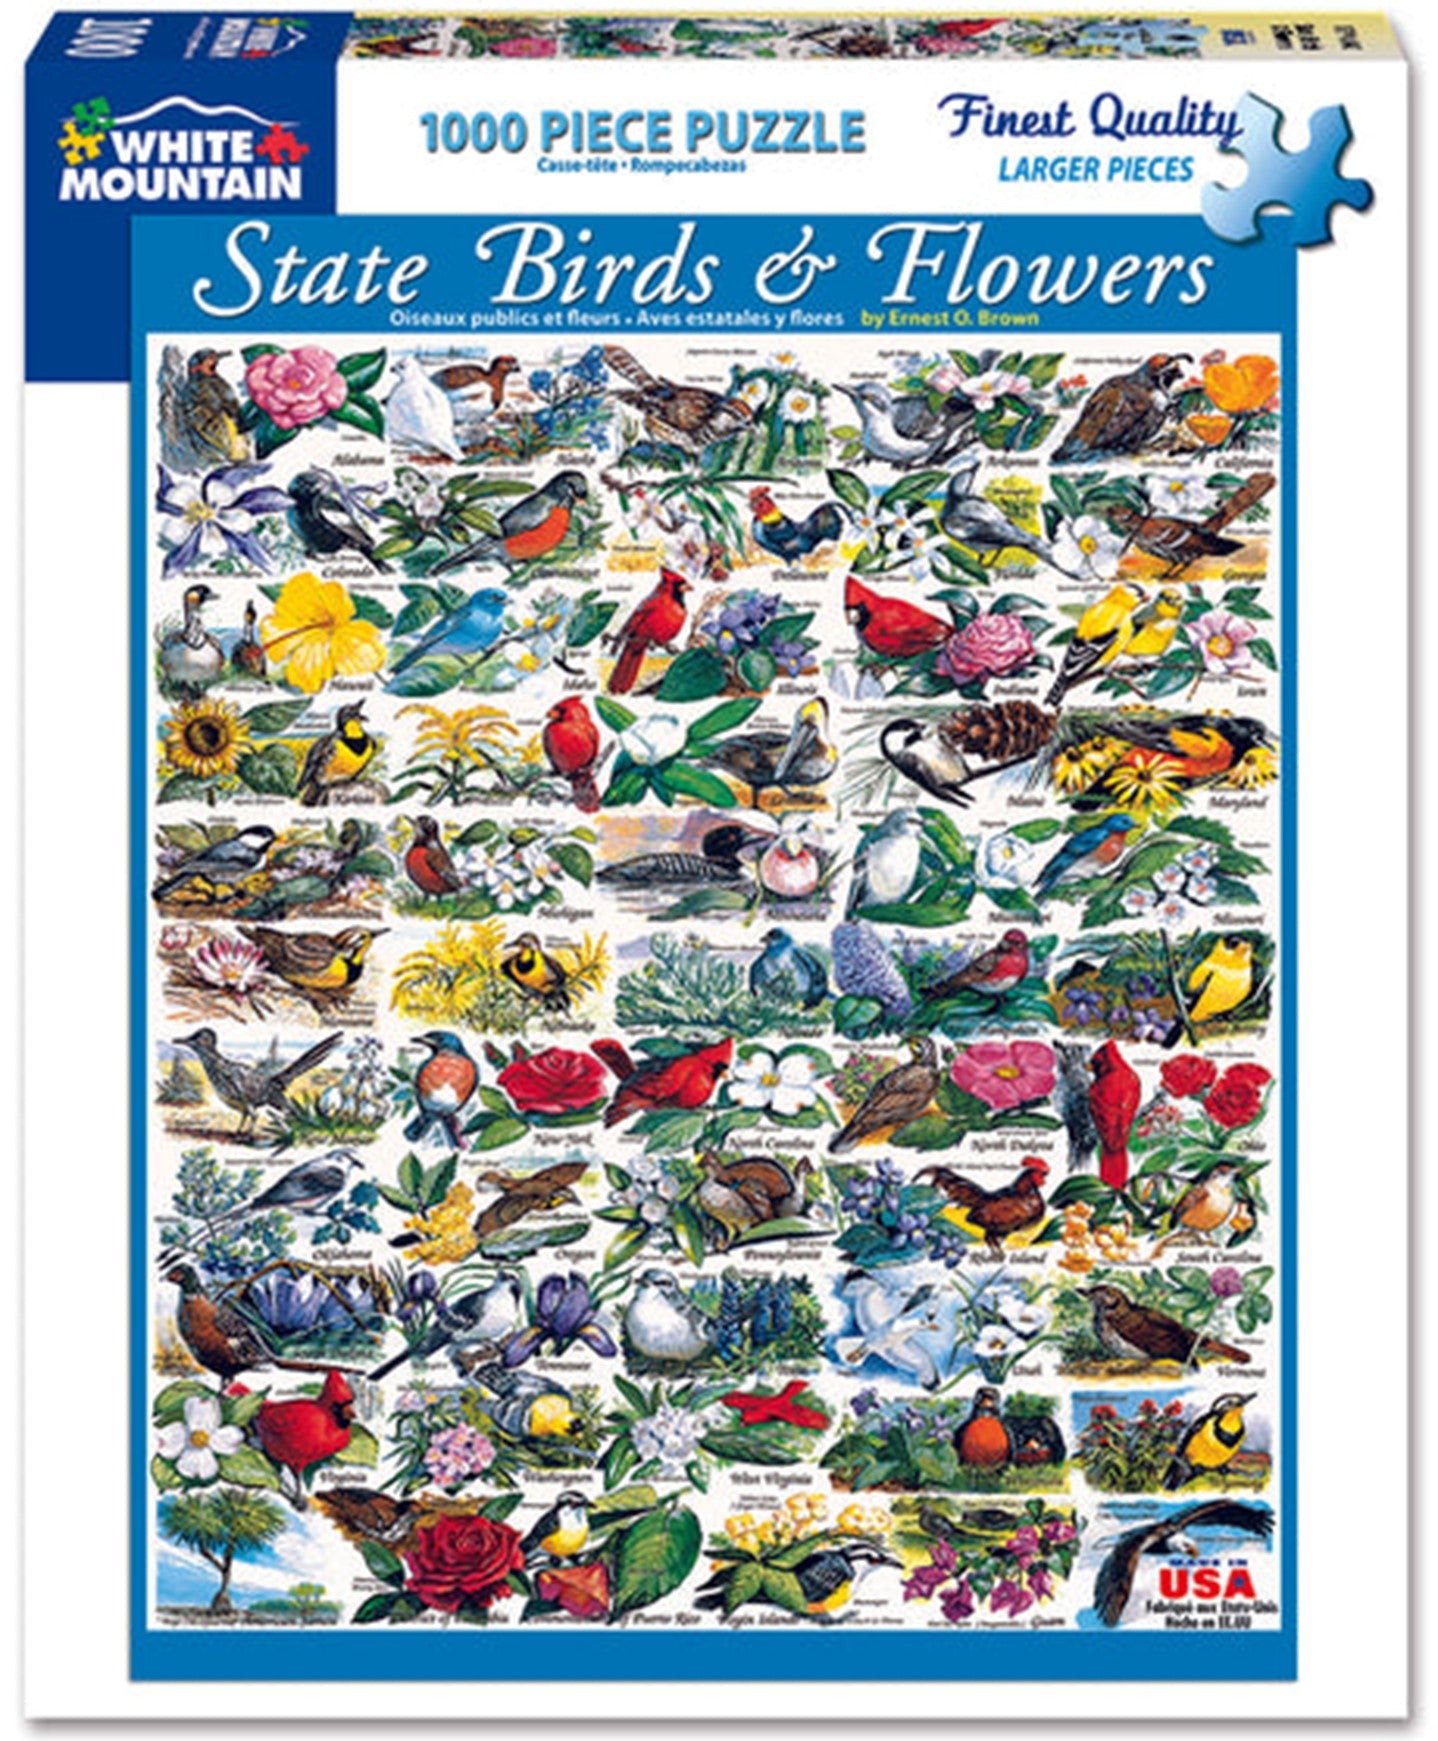 State Birds & Flowers Jigsaw Puzzle - 1000 Piece